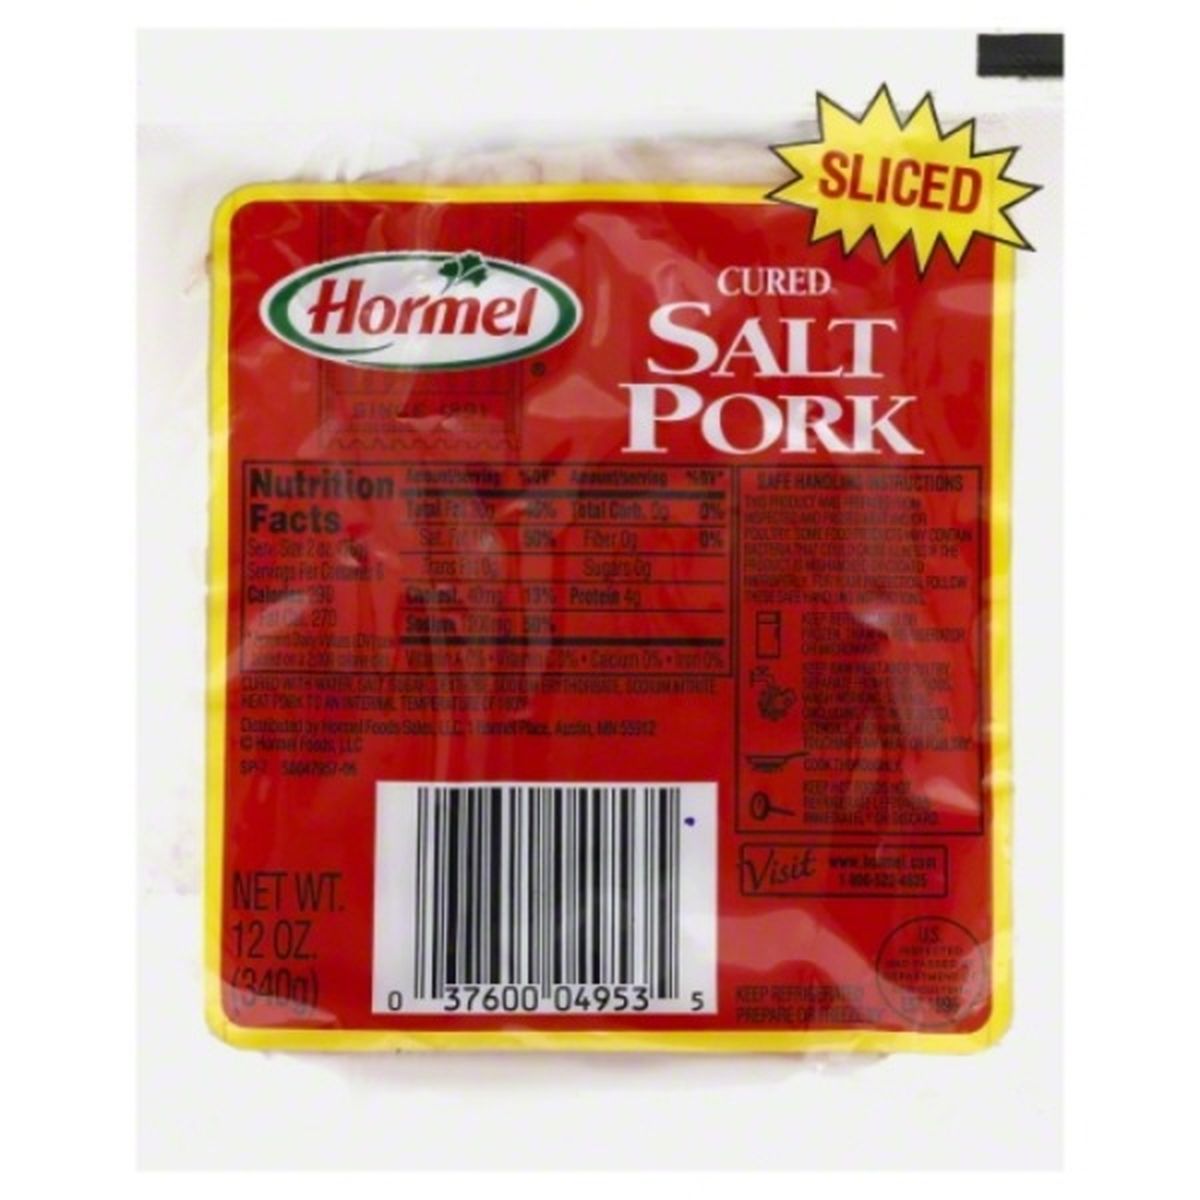 Calories in Hormel Salt Pork, Cured, Sliced